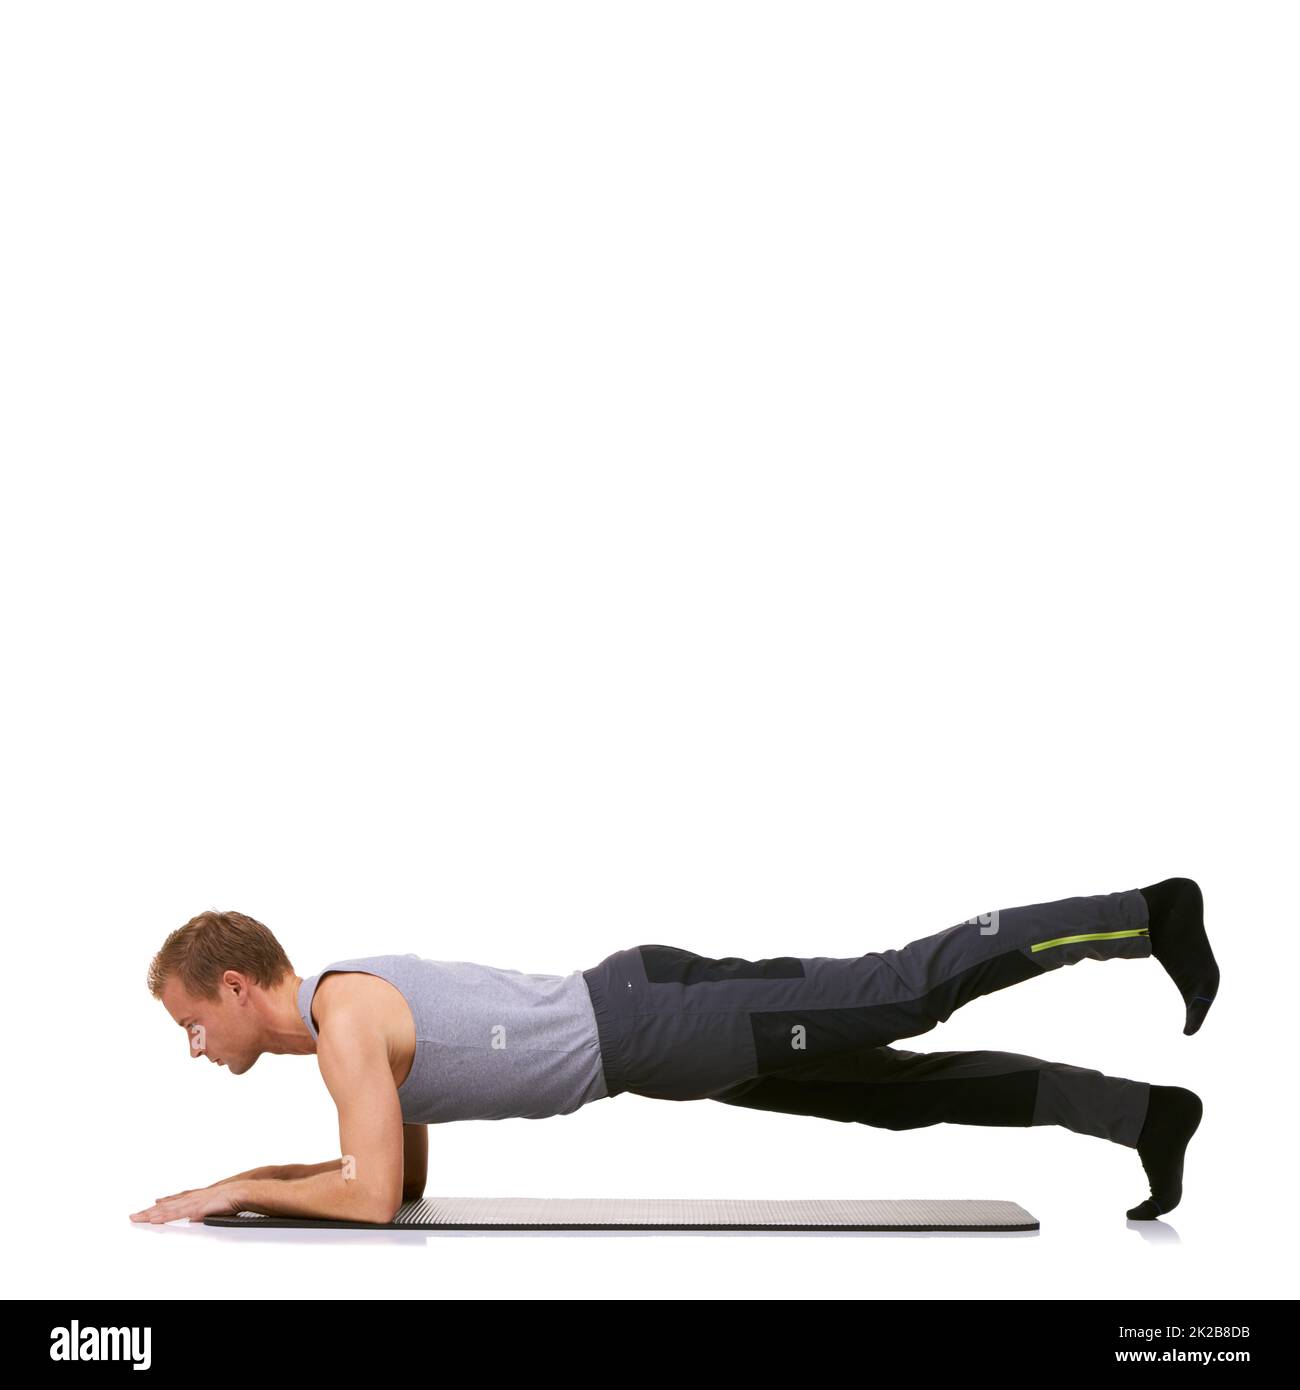 Perfezionare la sua tecnica. Un giovane uomo in forma che esegue una routine di esercizio mentre è isolato su uno sfondo bianco. Foto Stock